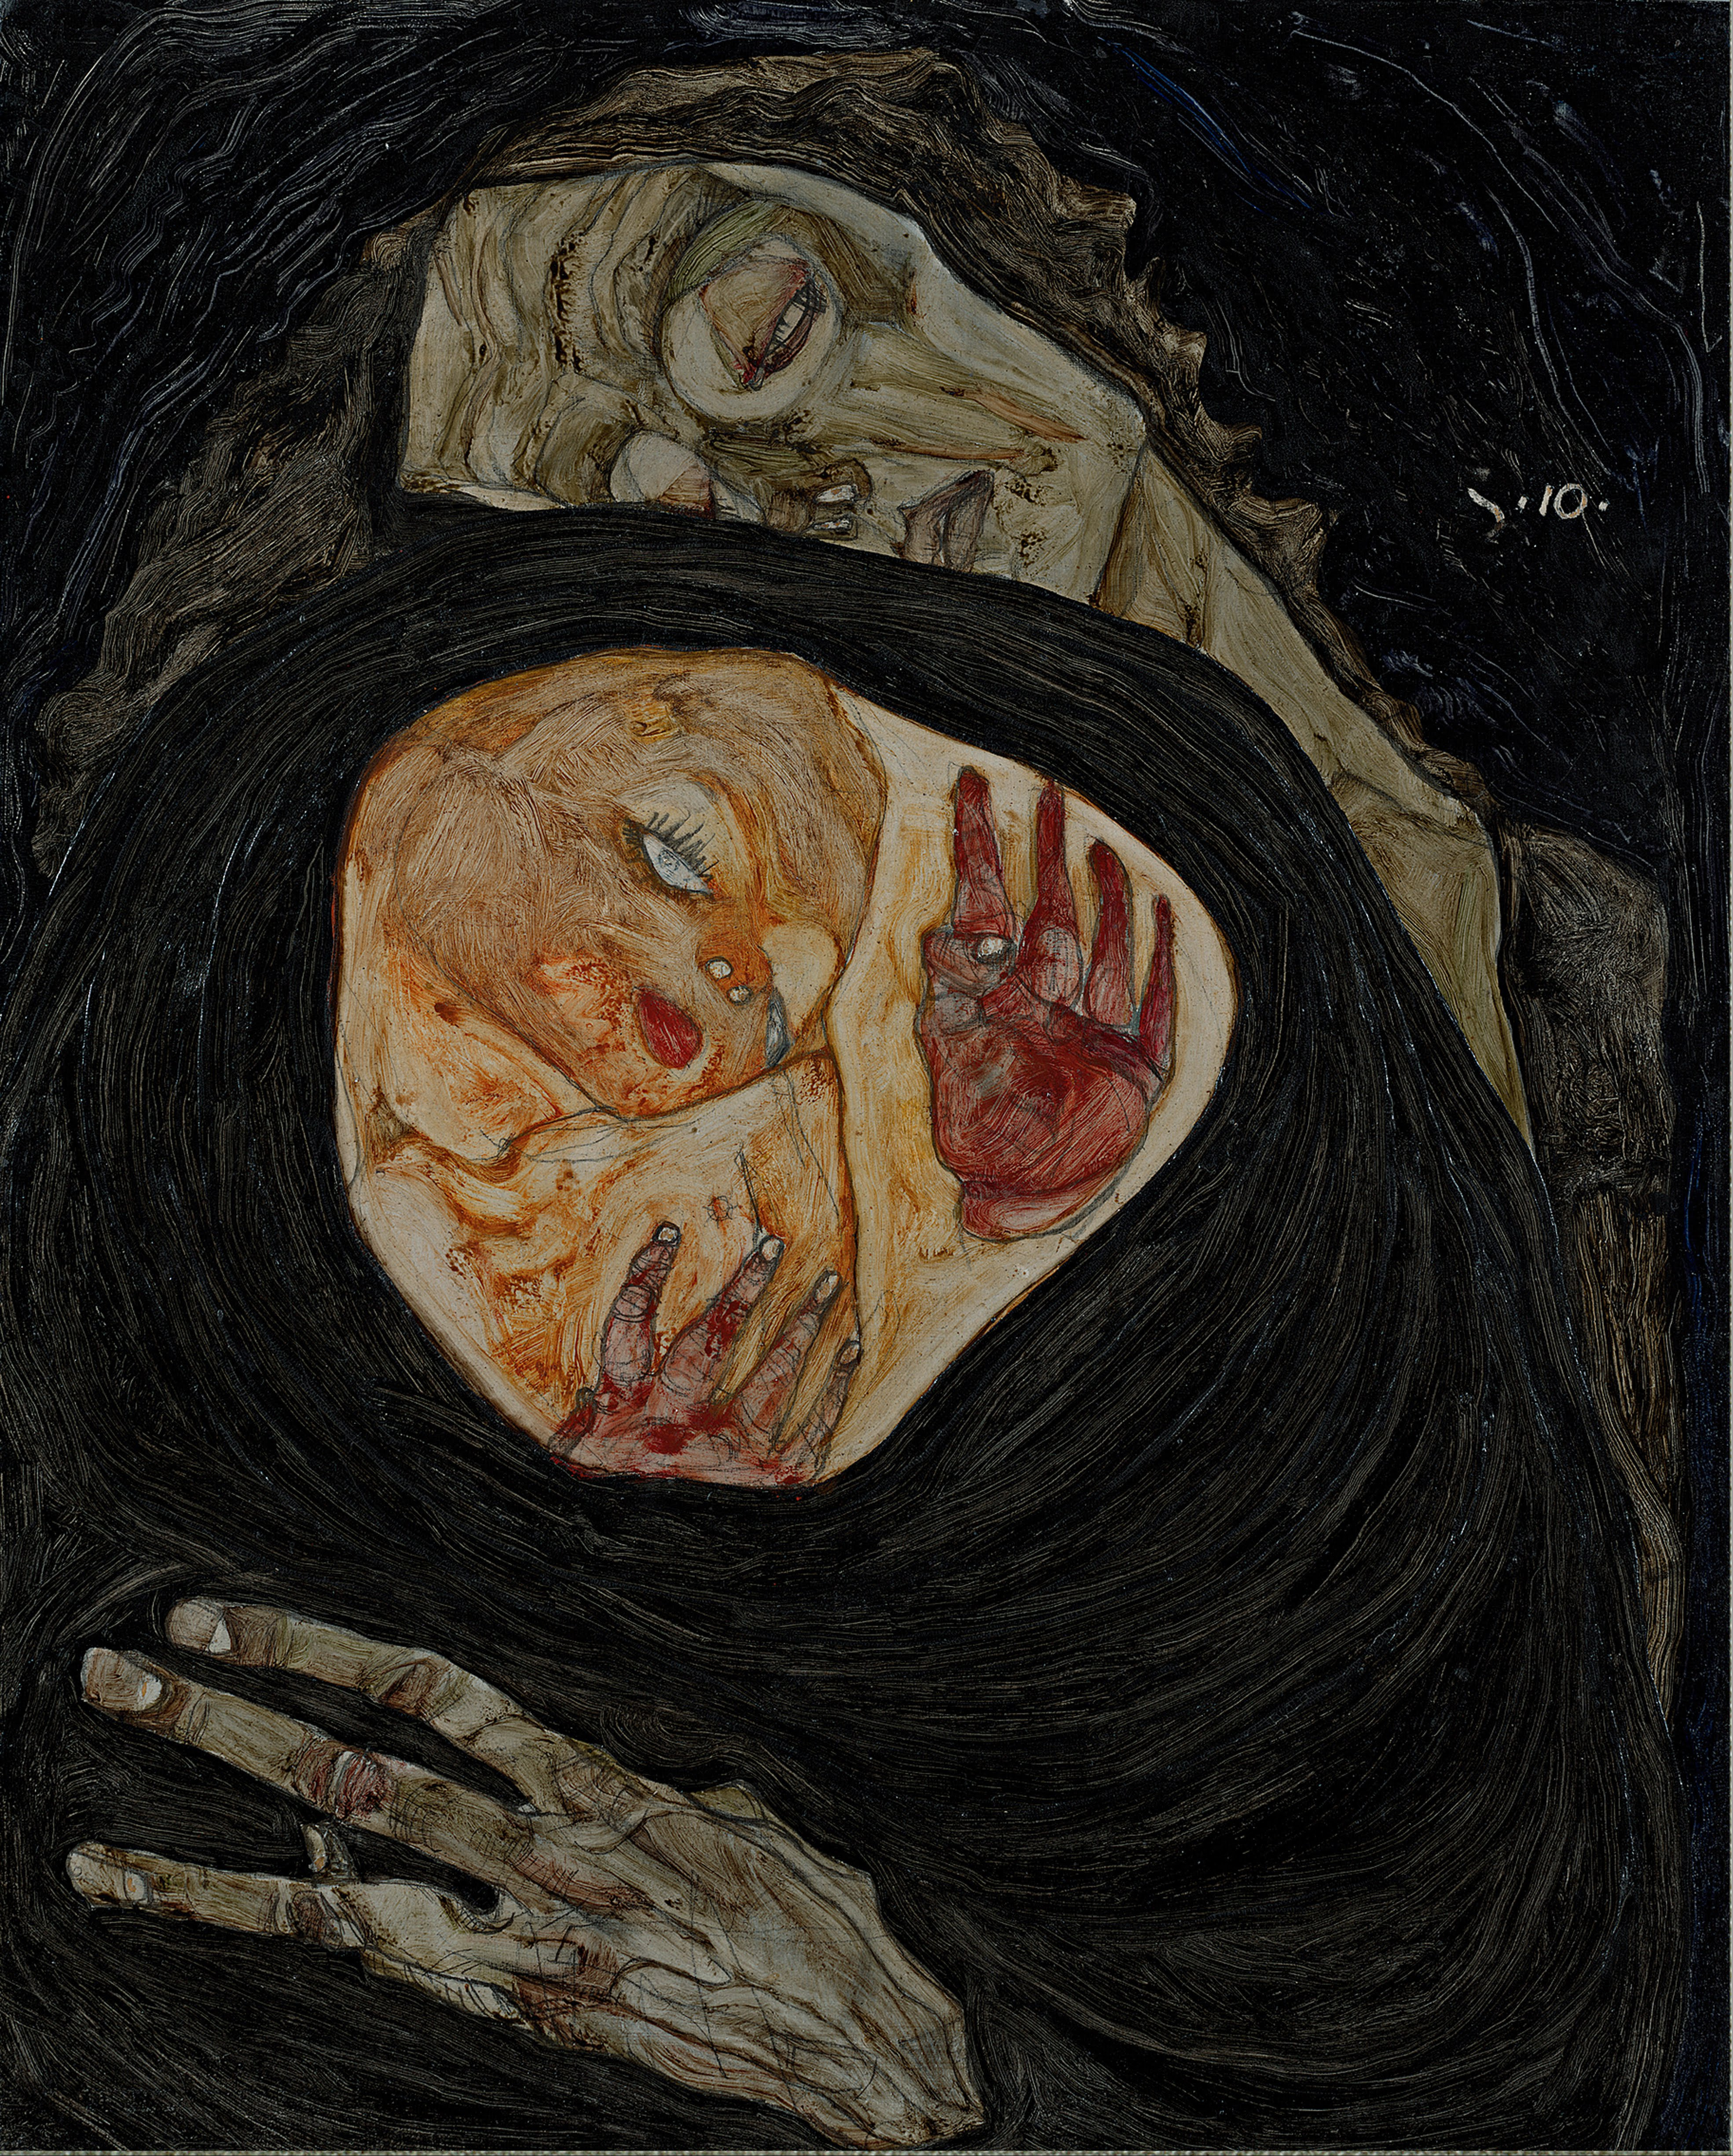 Martwa Matka by Egon Schiele - c. 1910 - 32 x 25.7 cm 